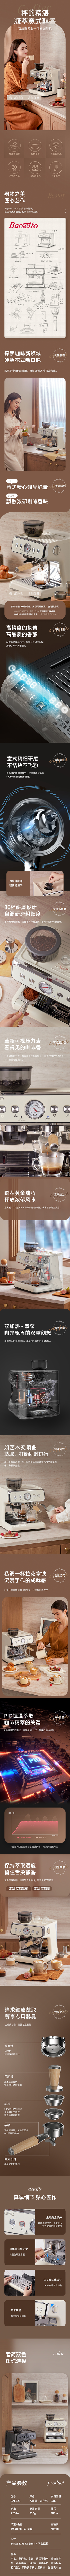 Barsetto/百胜图二代S双加热商用半自动咖啡机家用意式研磨一体机